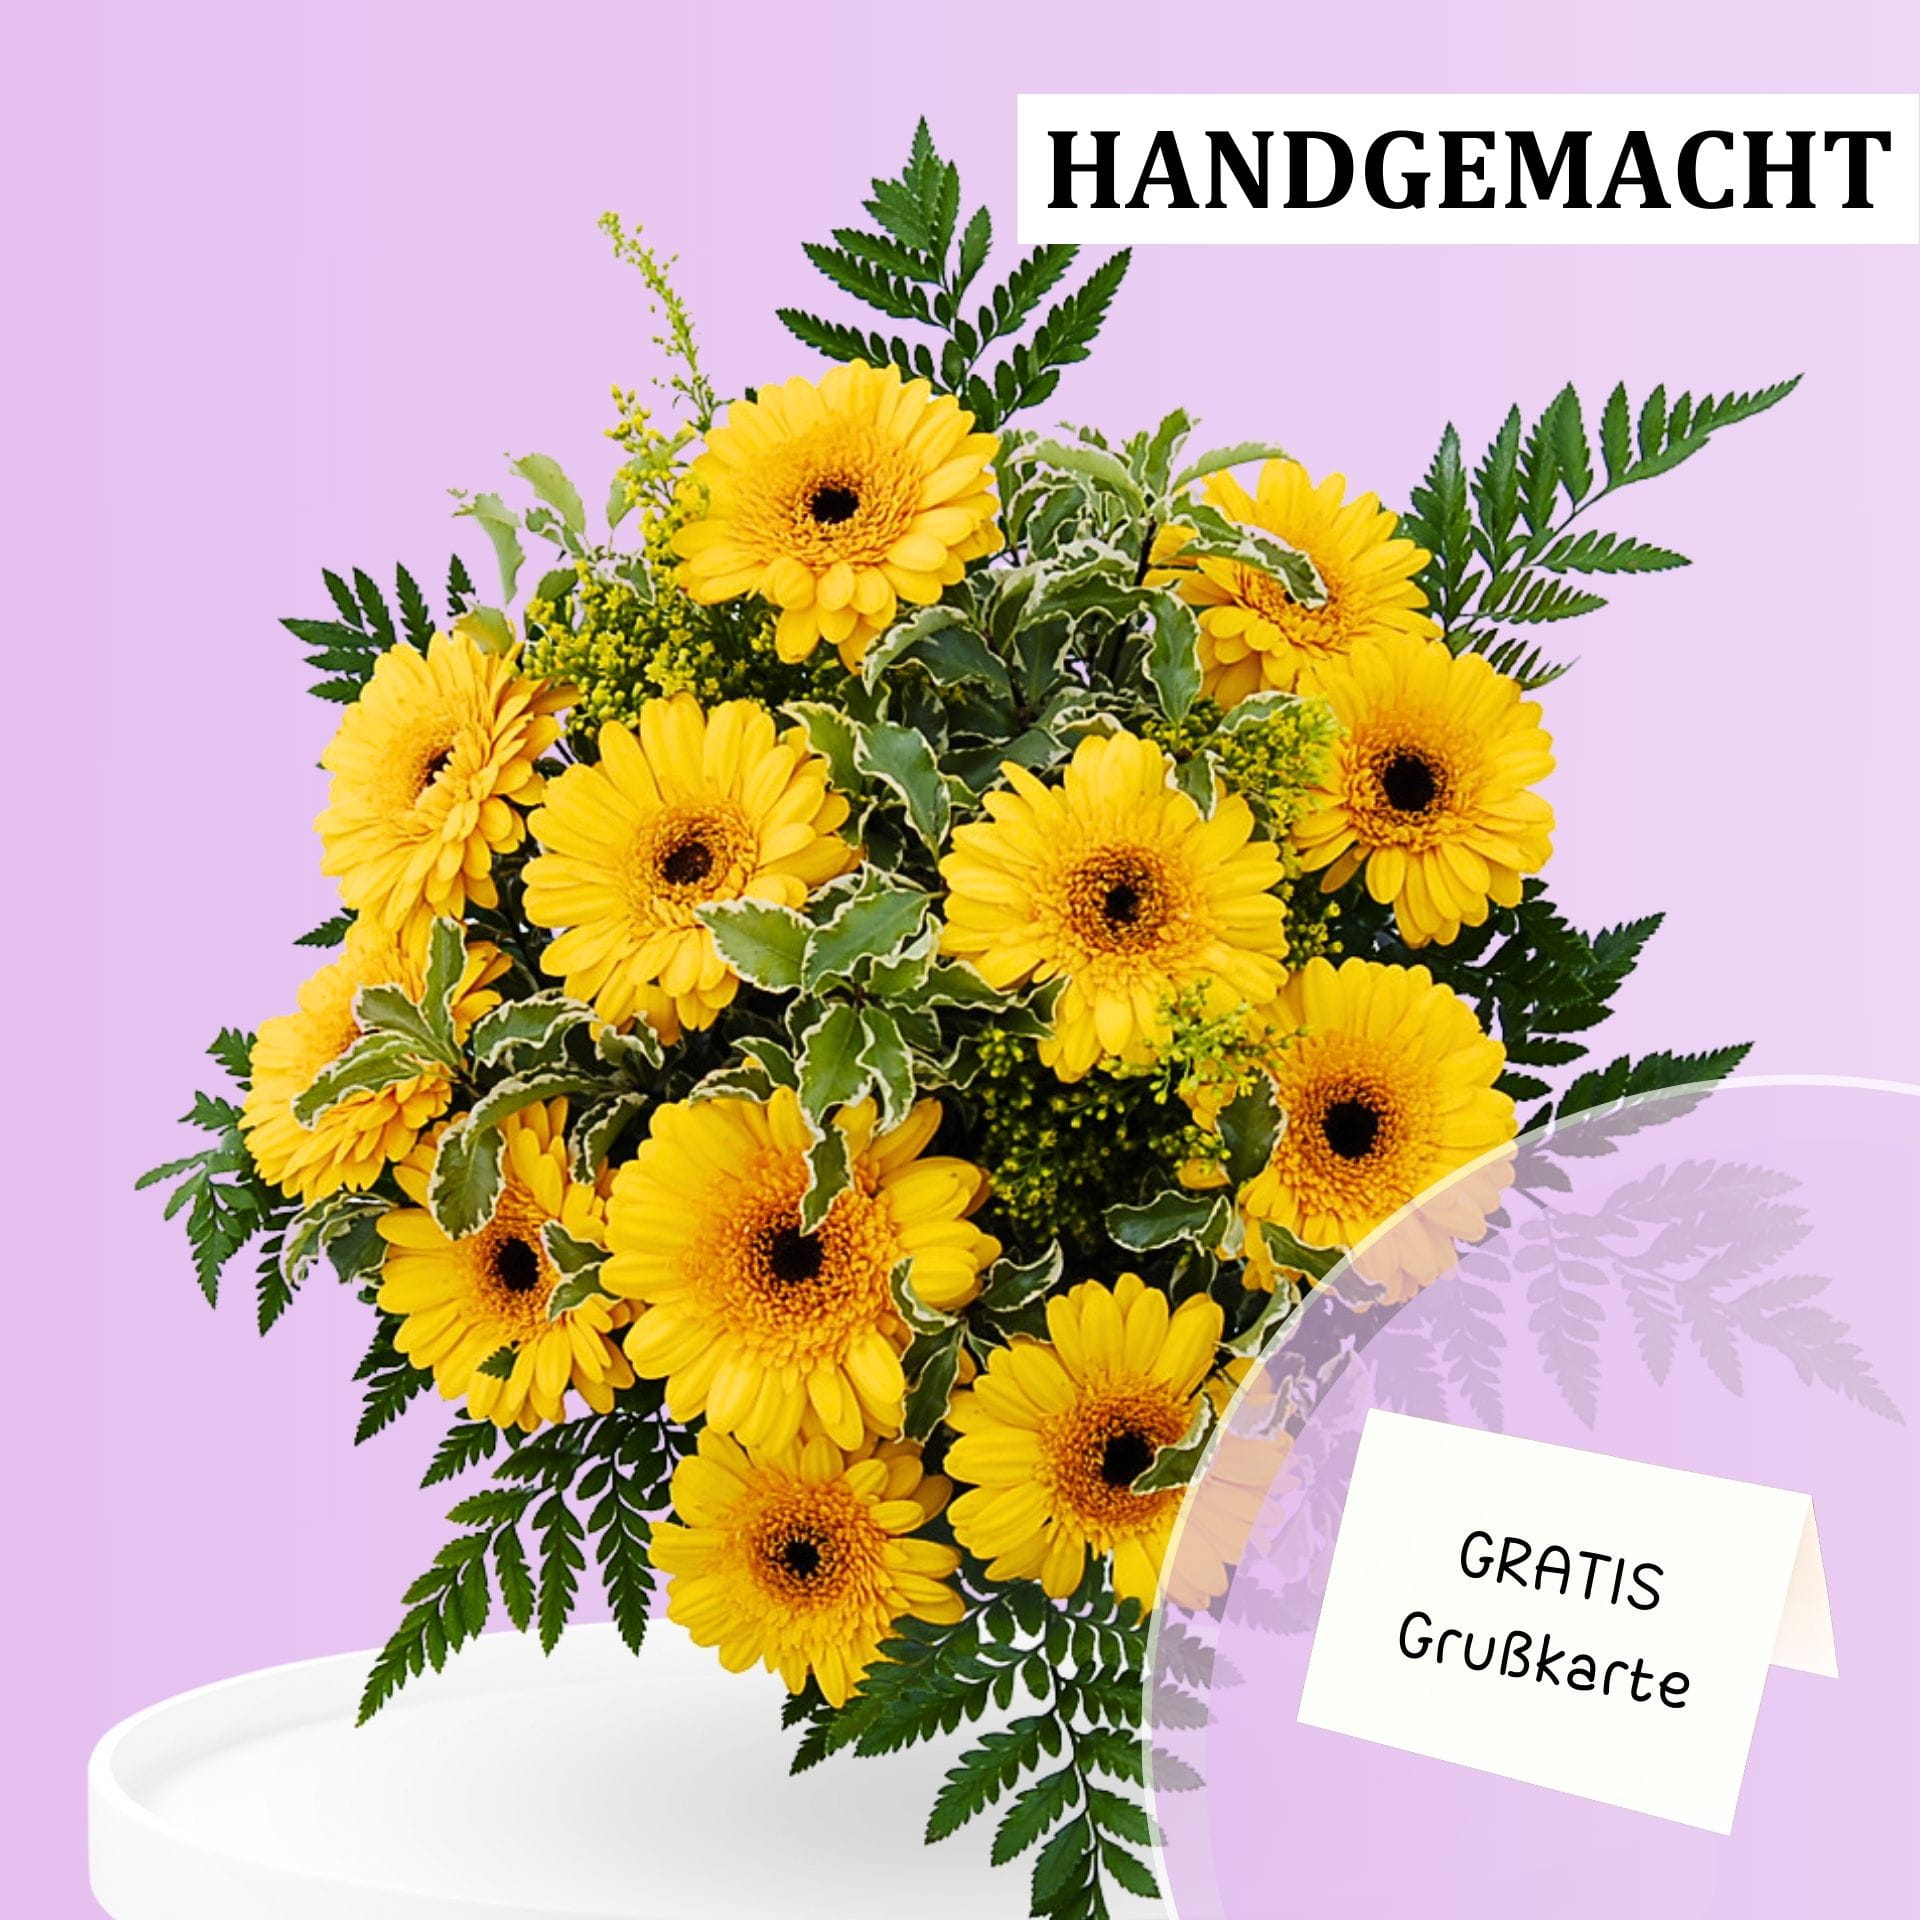 Handgemachter Blumenstrauß aus gelben Gerbera mit grünen Blättern und kostenloser Grußkarte in einem modernen Innenraum